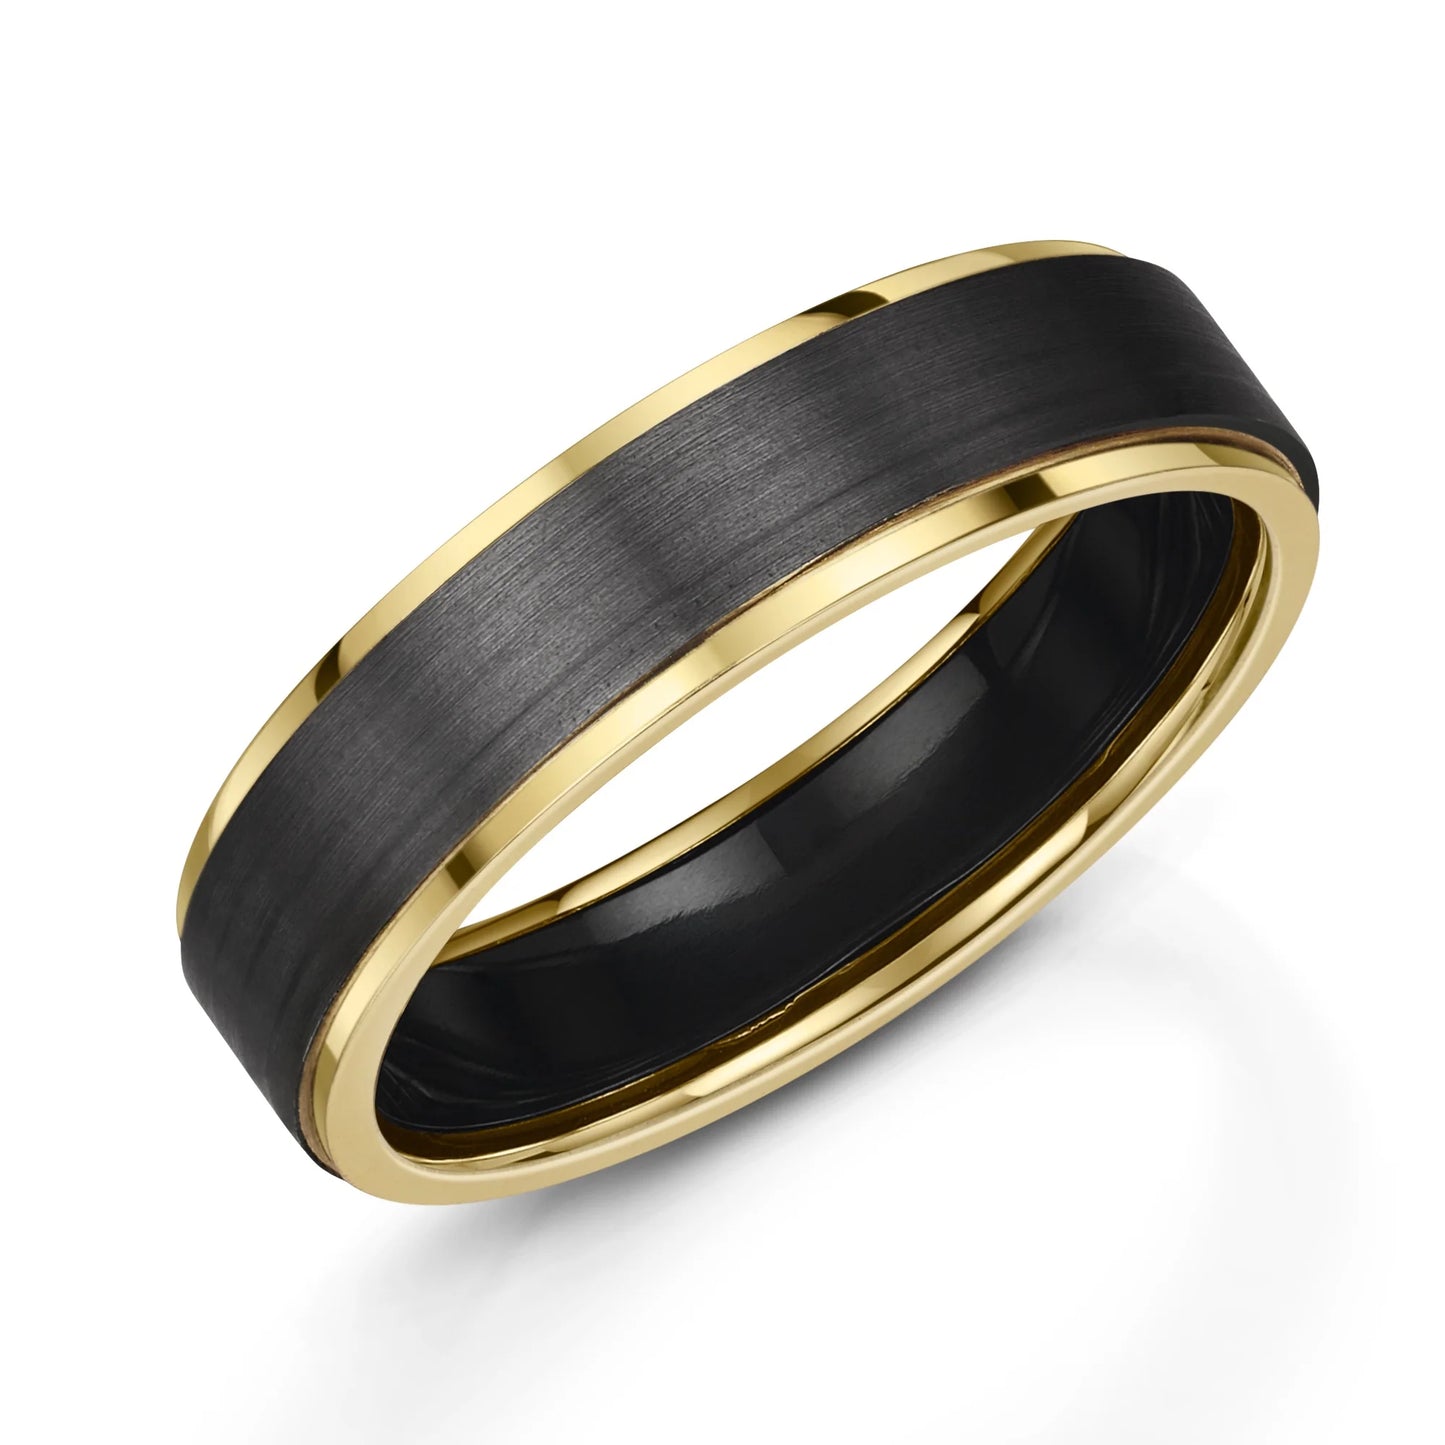 Zedd Zirconium & 9ct Yellow Gold Wedding Ring